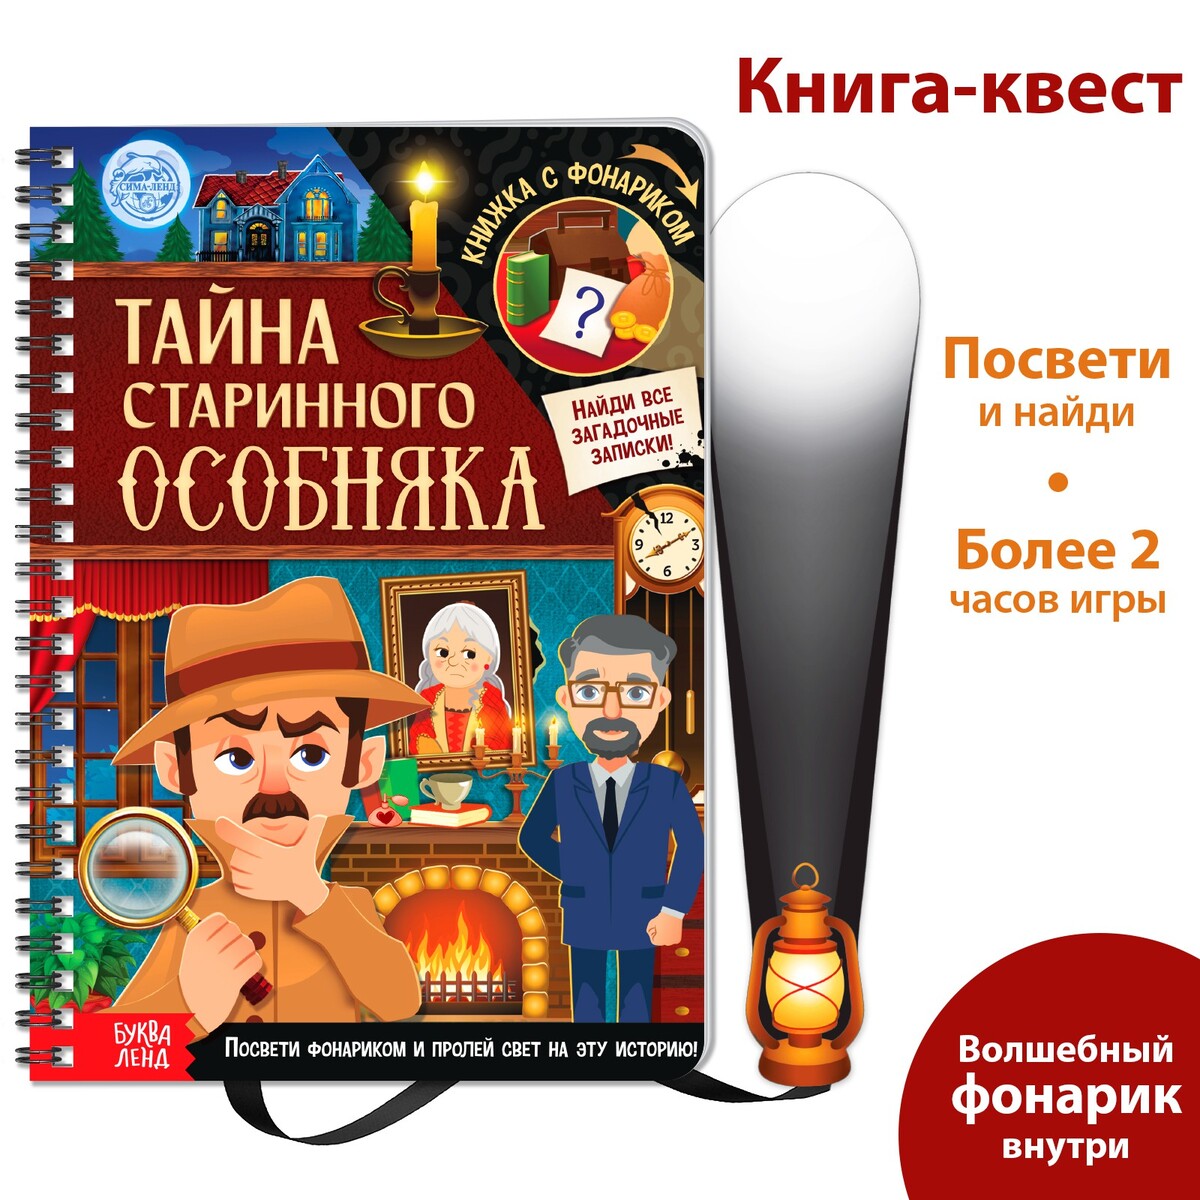 Книга-квест с фонариком фрунзенская коммуна книга о необычной жизни обыкновенных советских ребят